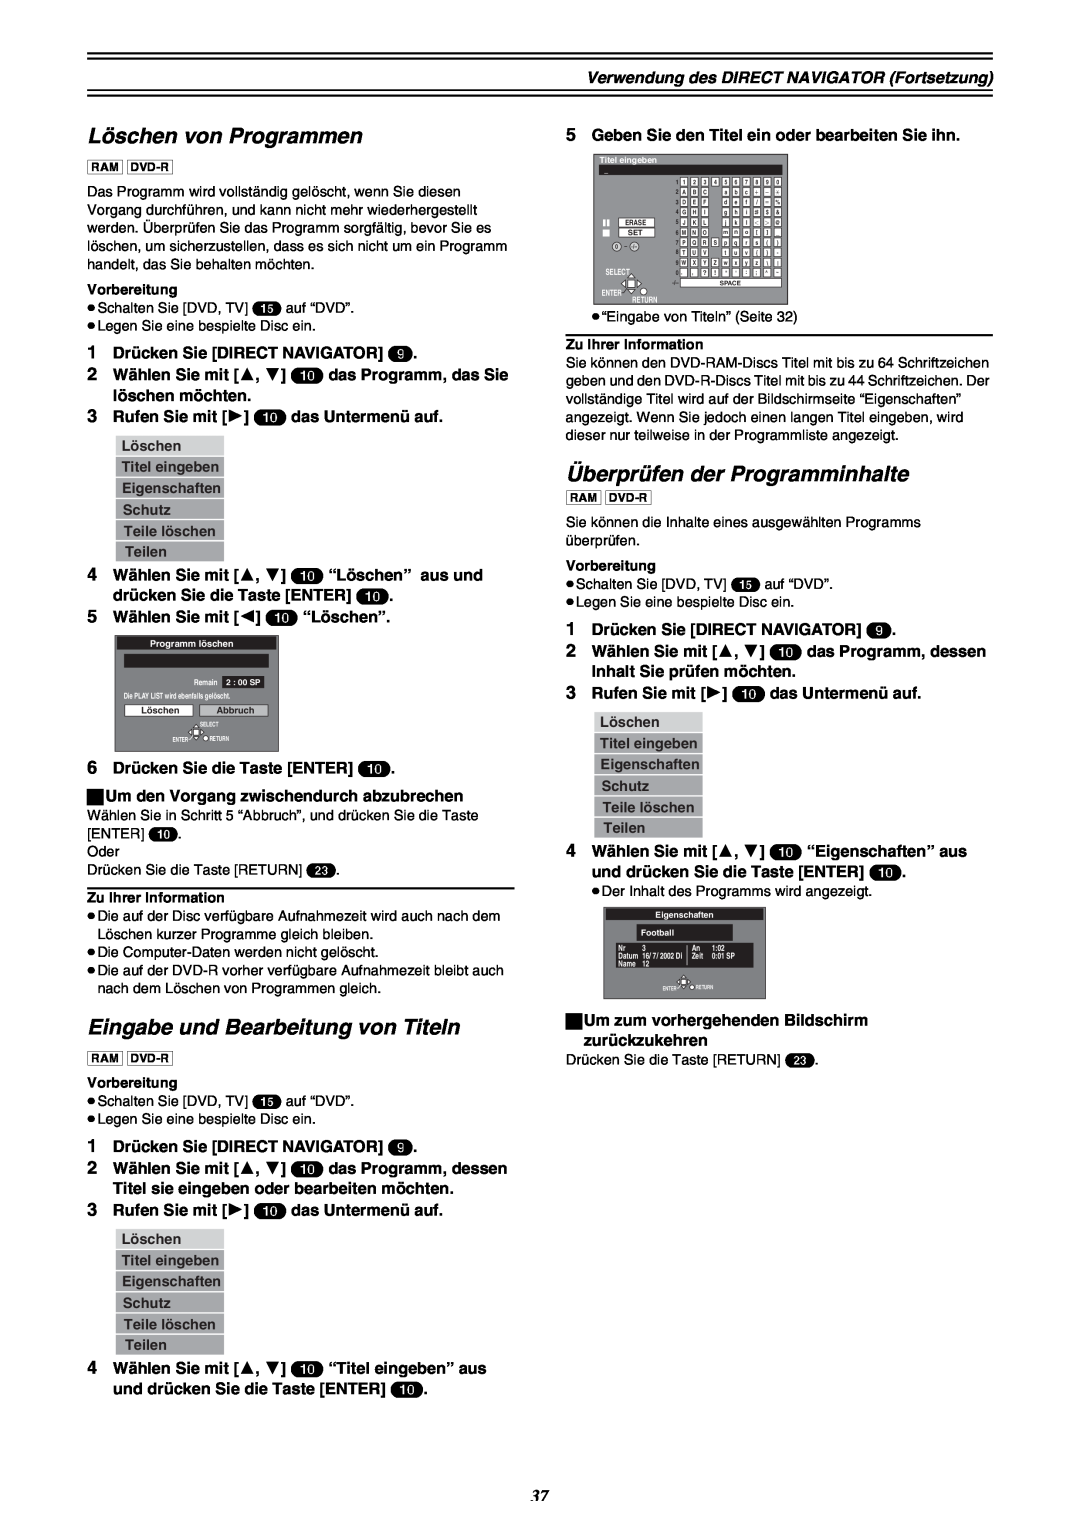 Panasonic DMR-E30 manual Löschen von Programmen, Eingabe und Bearbeitung von Titeln, Überprüfen der Programminhalte 